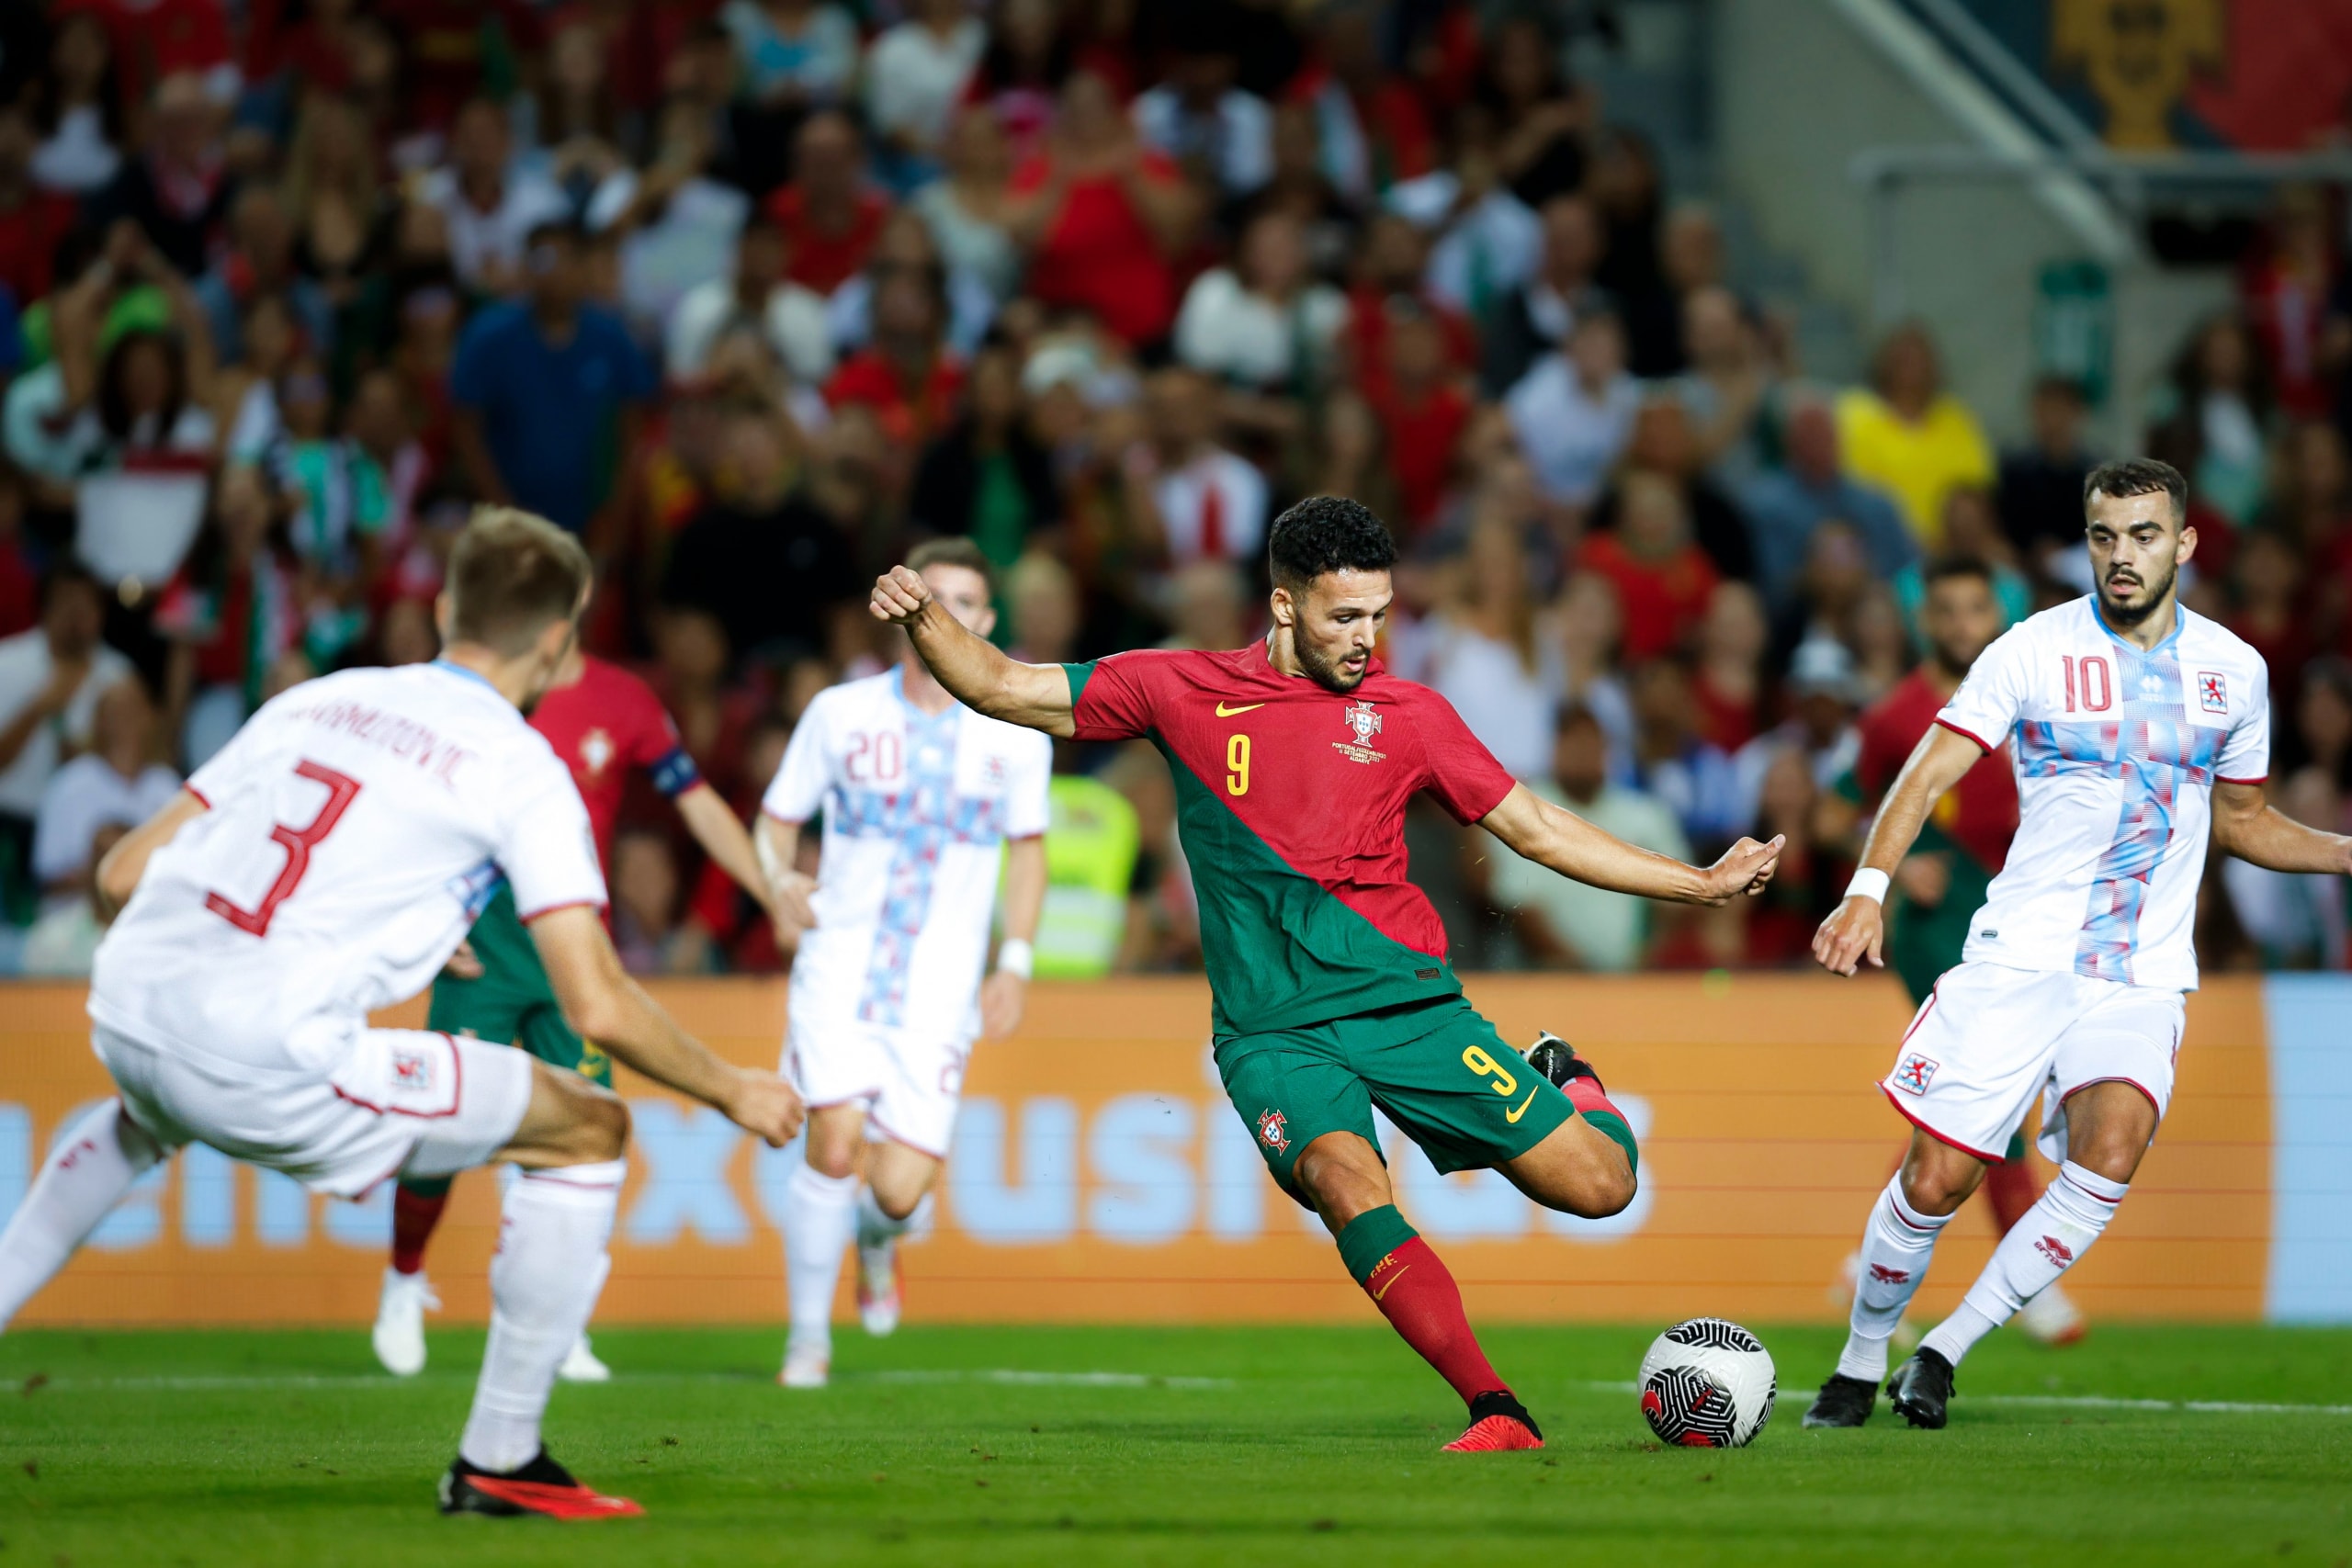 Cristiano Ronaldo 累計黃牌缺陣 葡萄牙於歐洲足球錦標賽以 9 比 0 重擊盧森堡